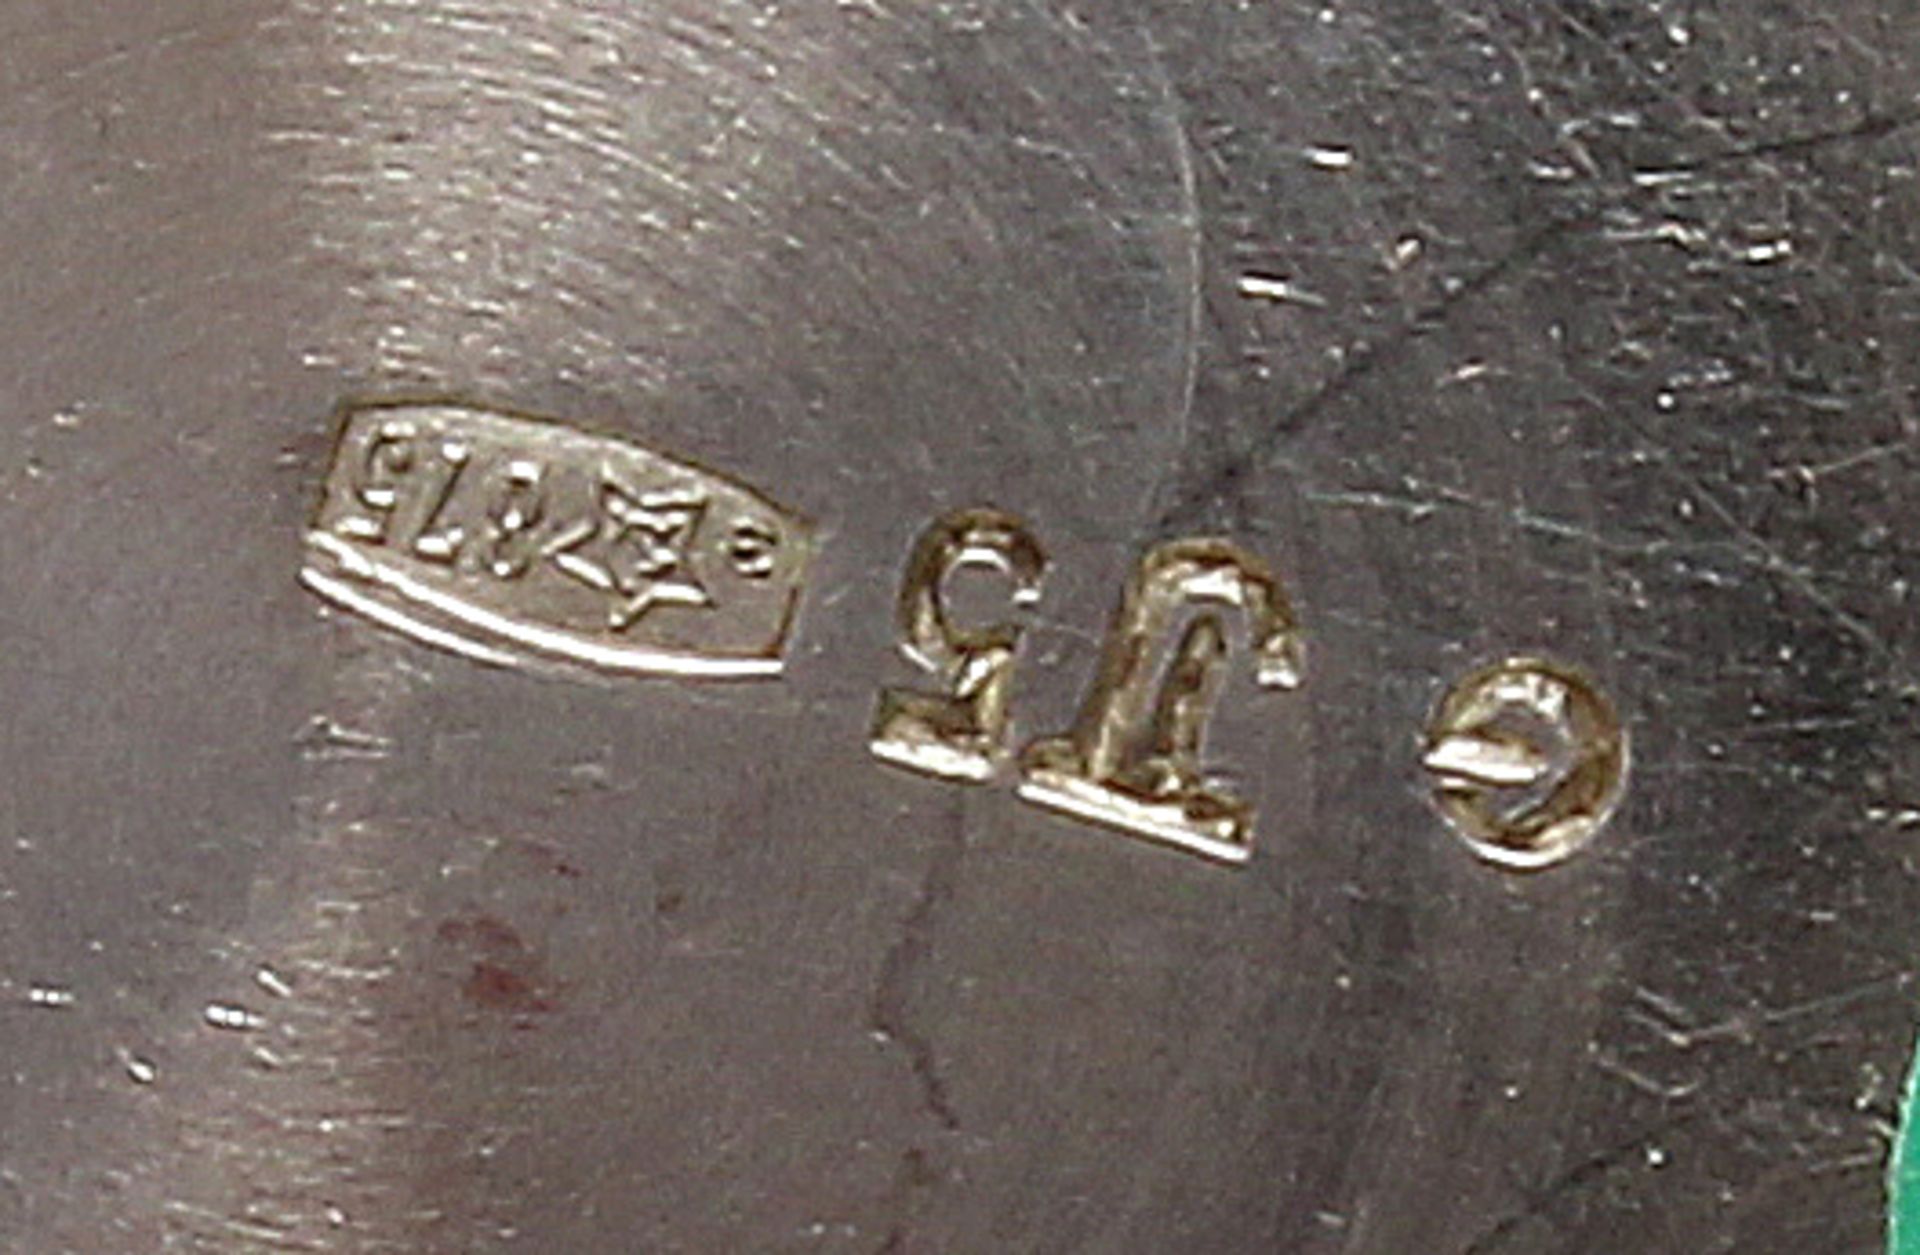 Zuckerkörbchen, Silber 875, Tallin, ab 1958, satiniert, innen vergoldet, beweglicher Bügelhenkel, 6 - Bild 2 aus 2